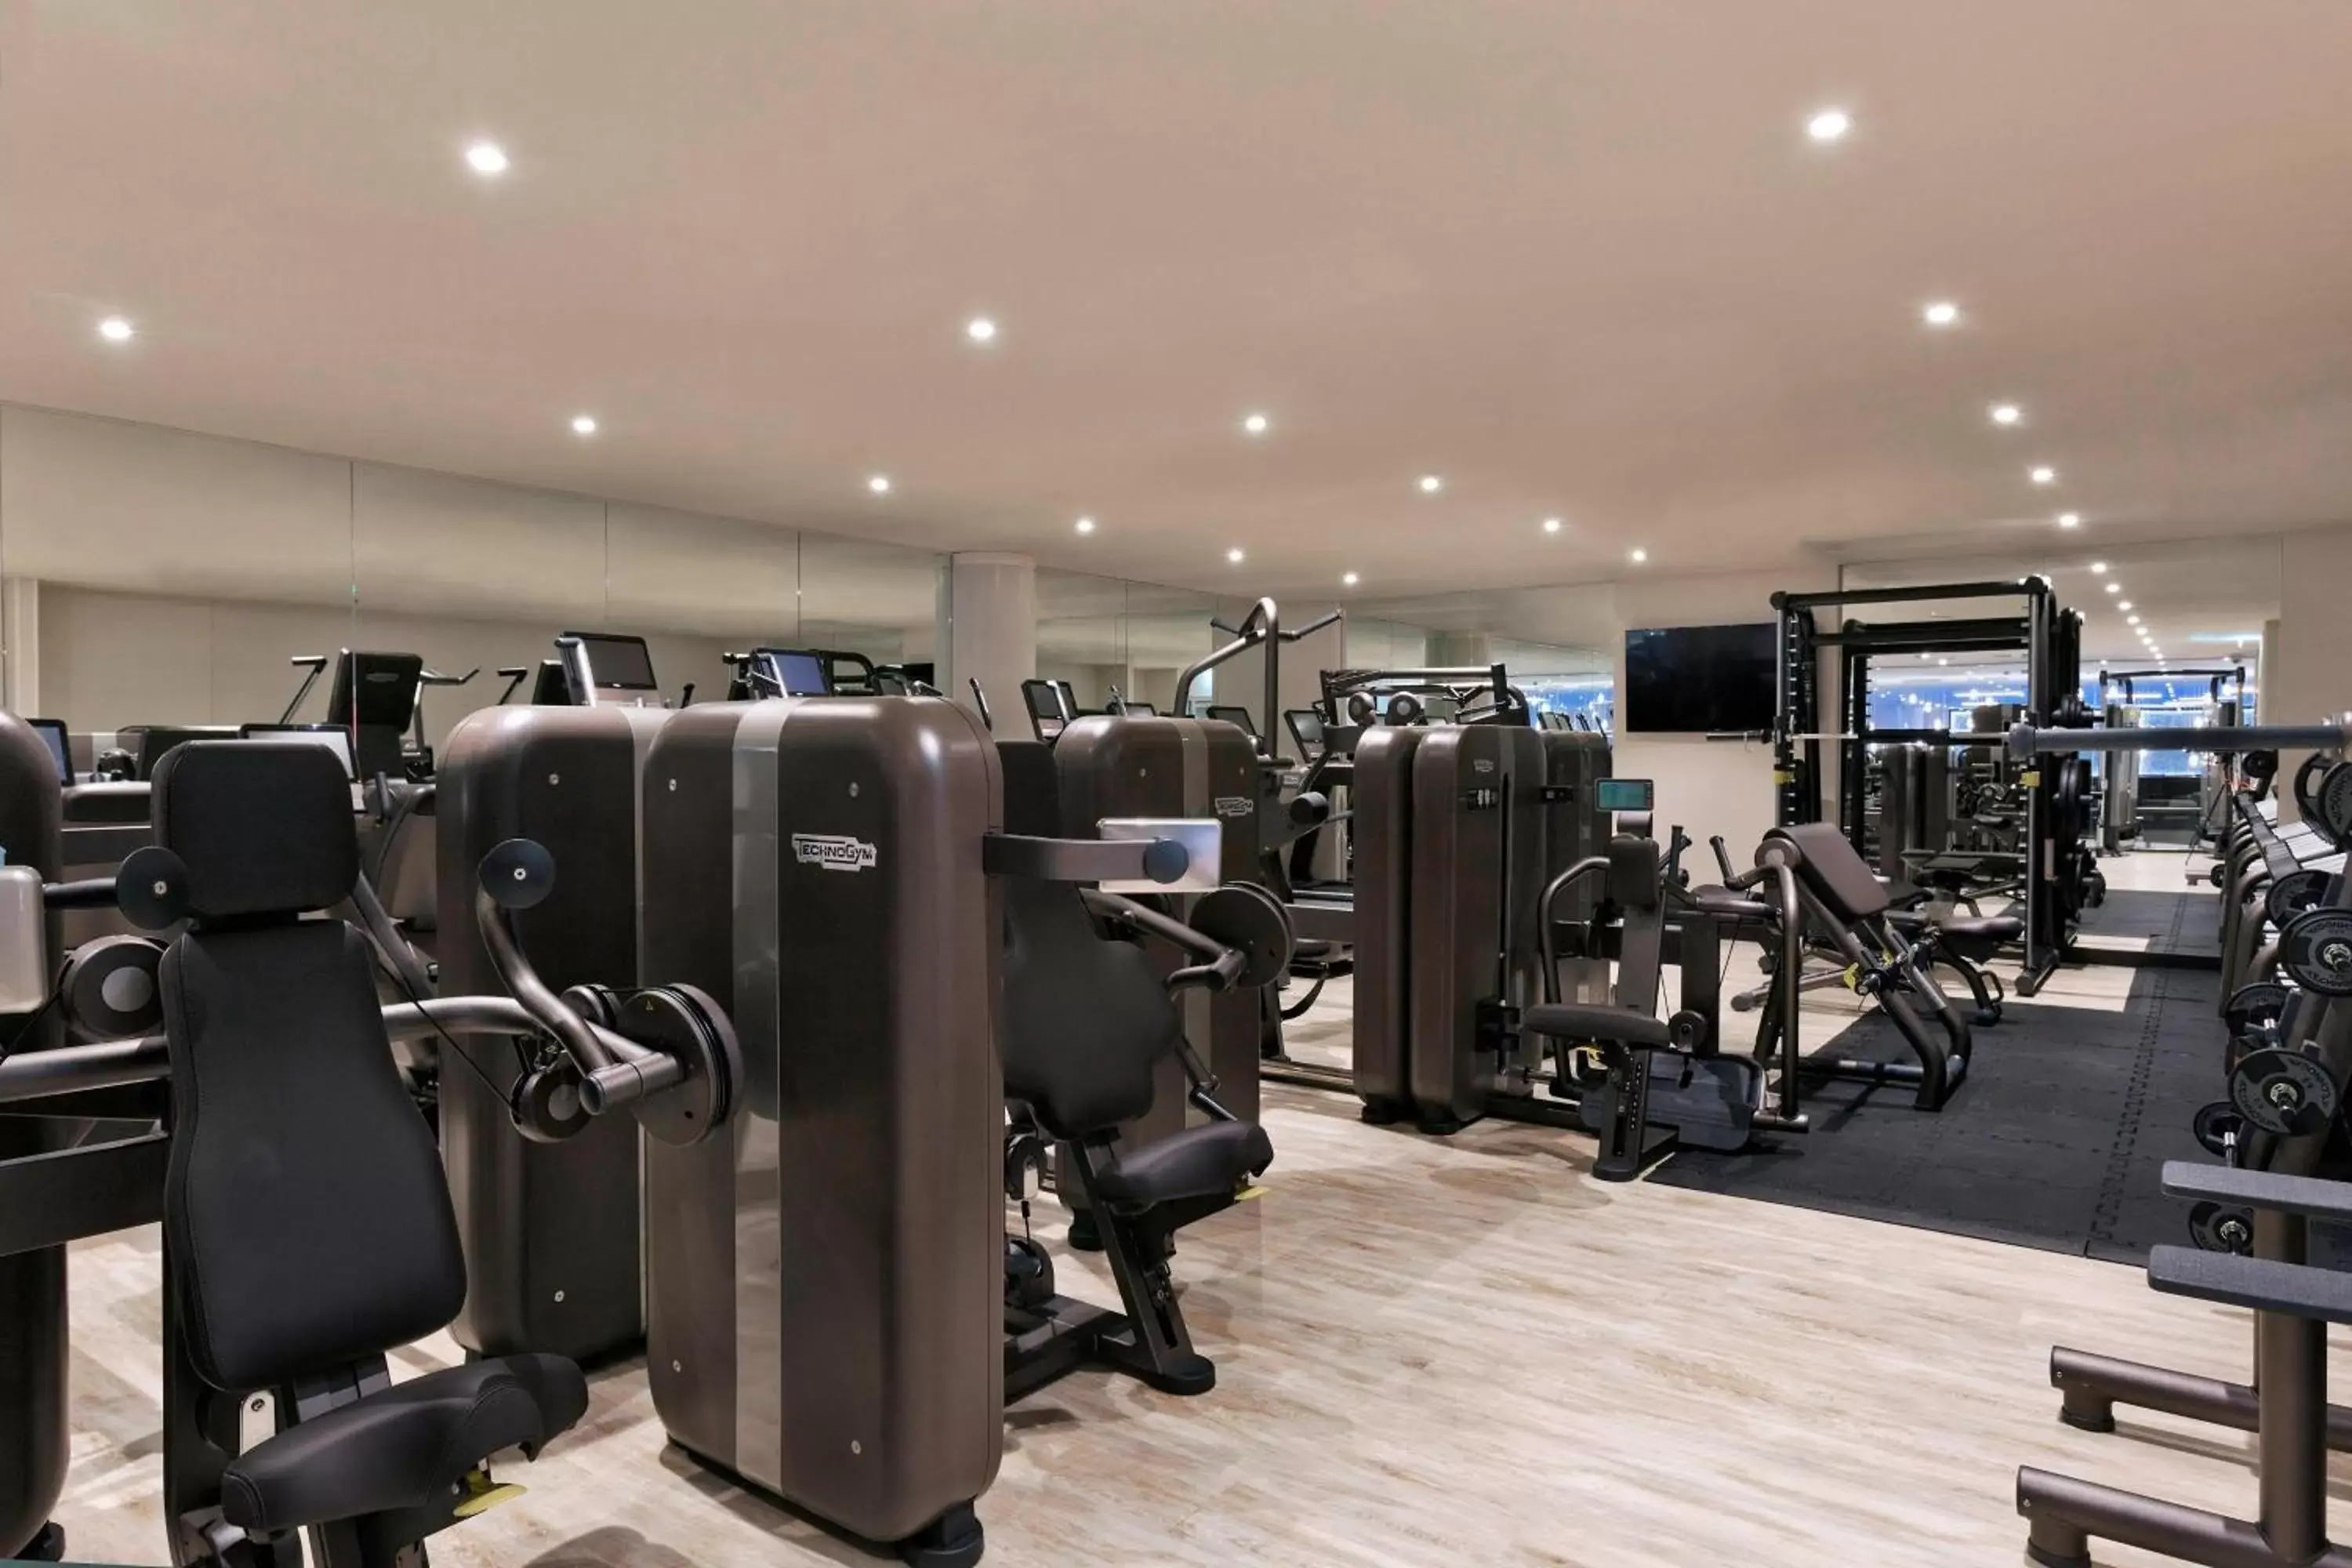 Fitness centre/facilities, Fitness Center/Facilities in Vienna Marriott Hotel